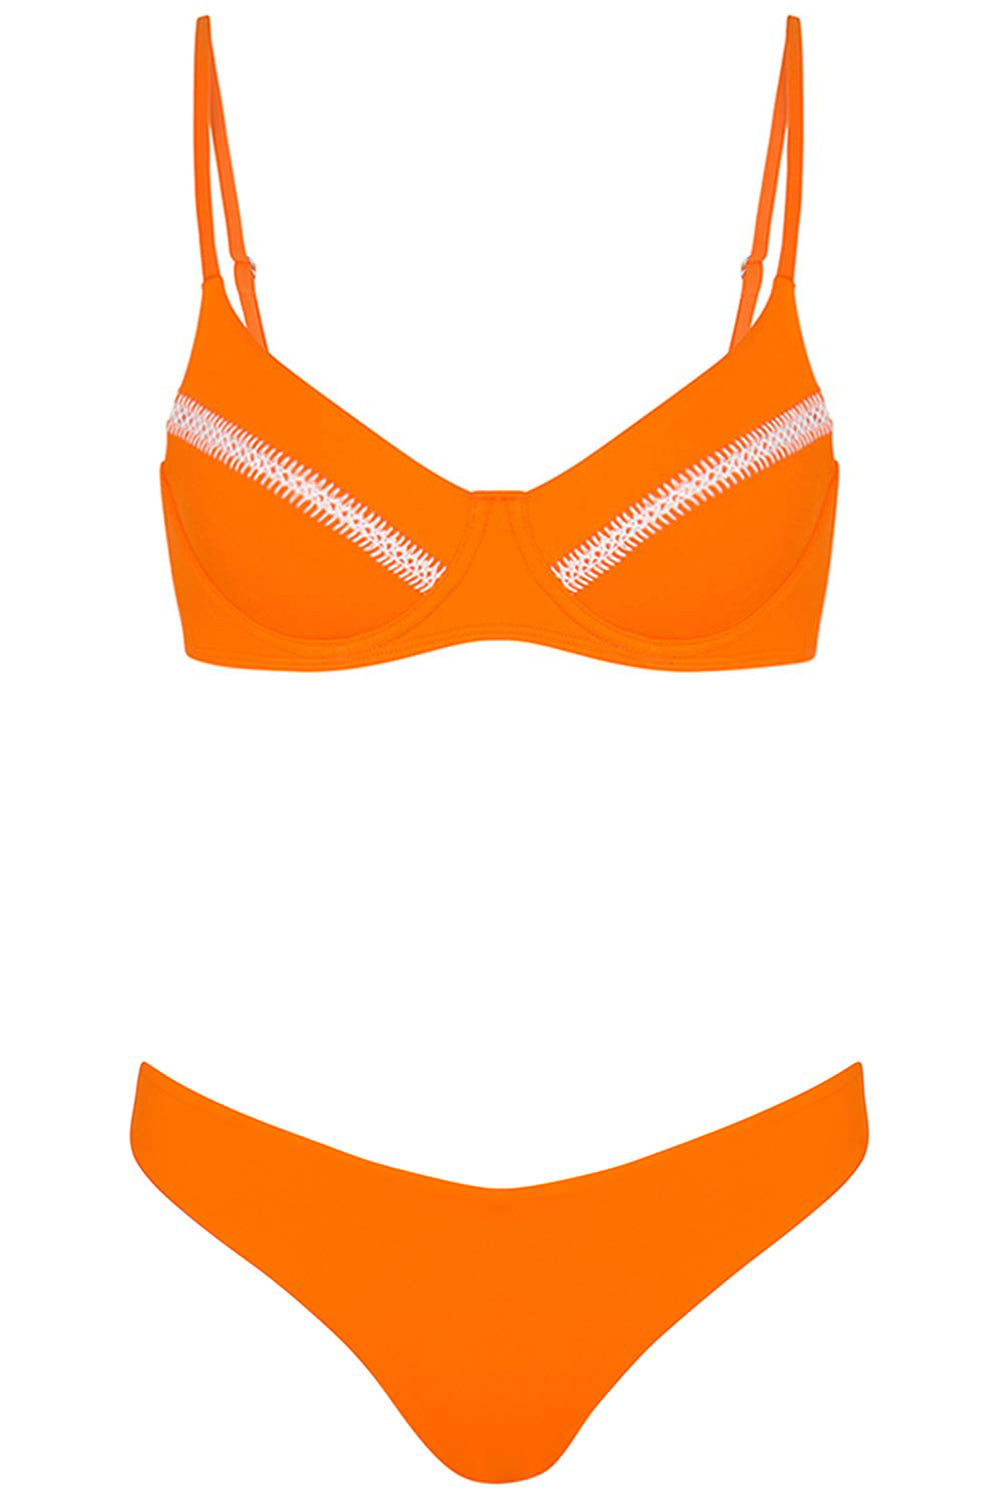 Destin Bikini Orange Set on white background front view.